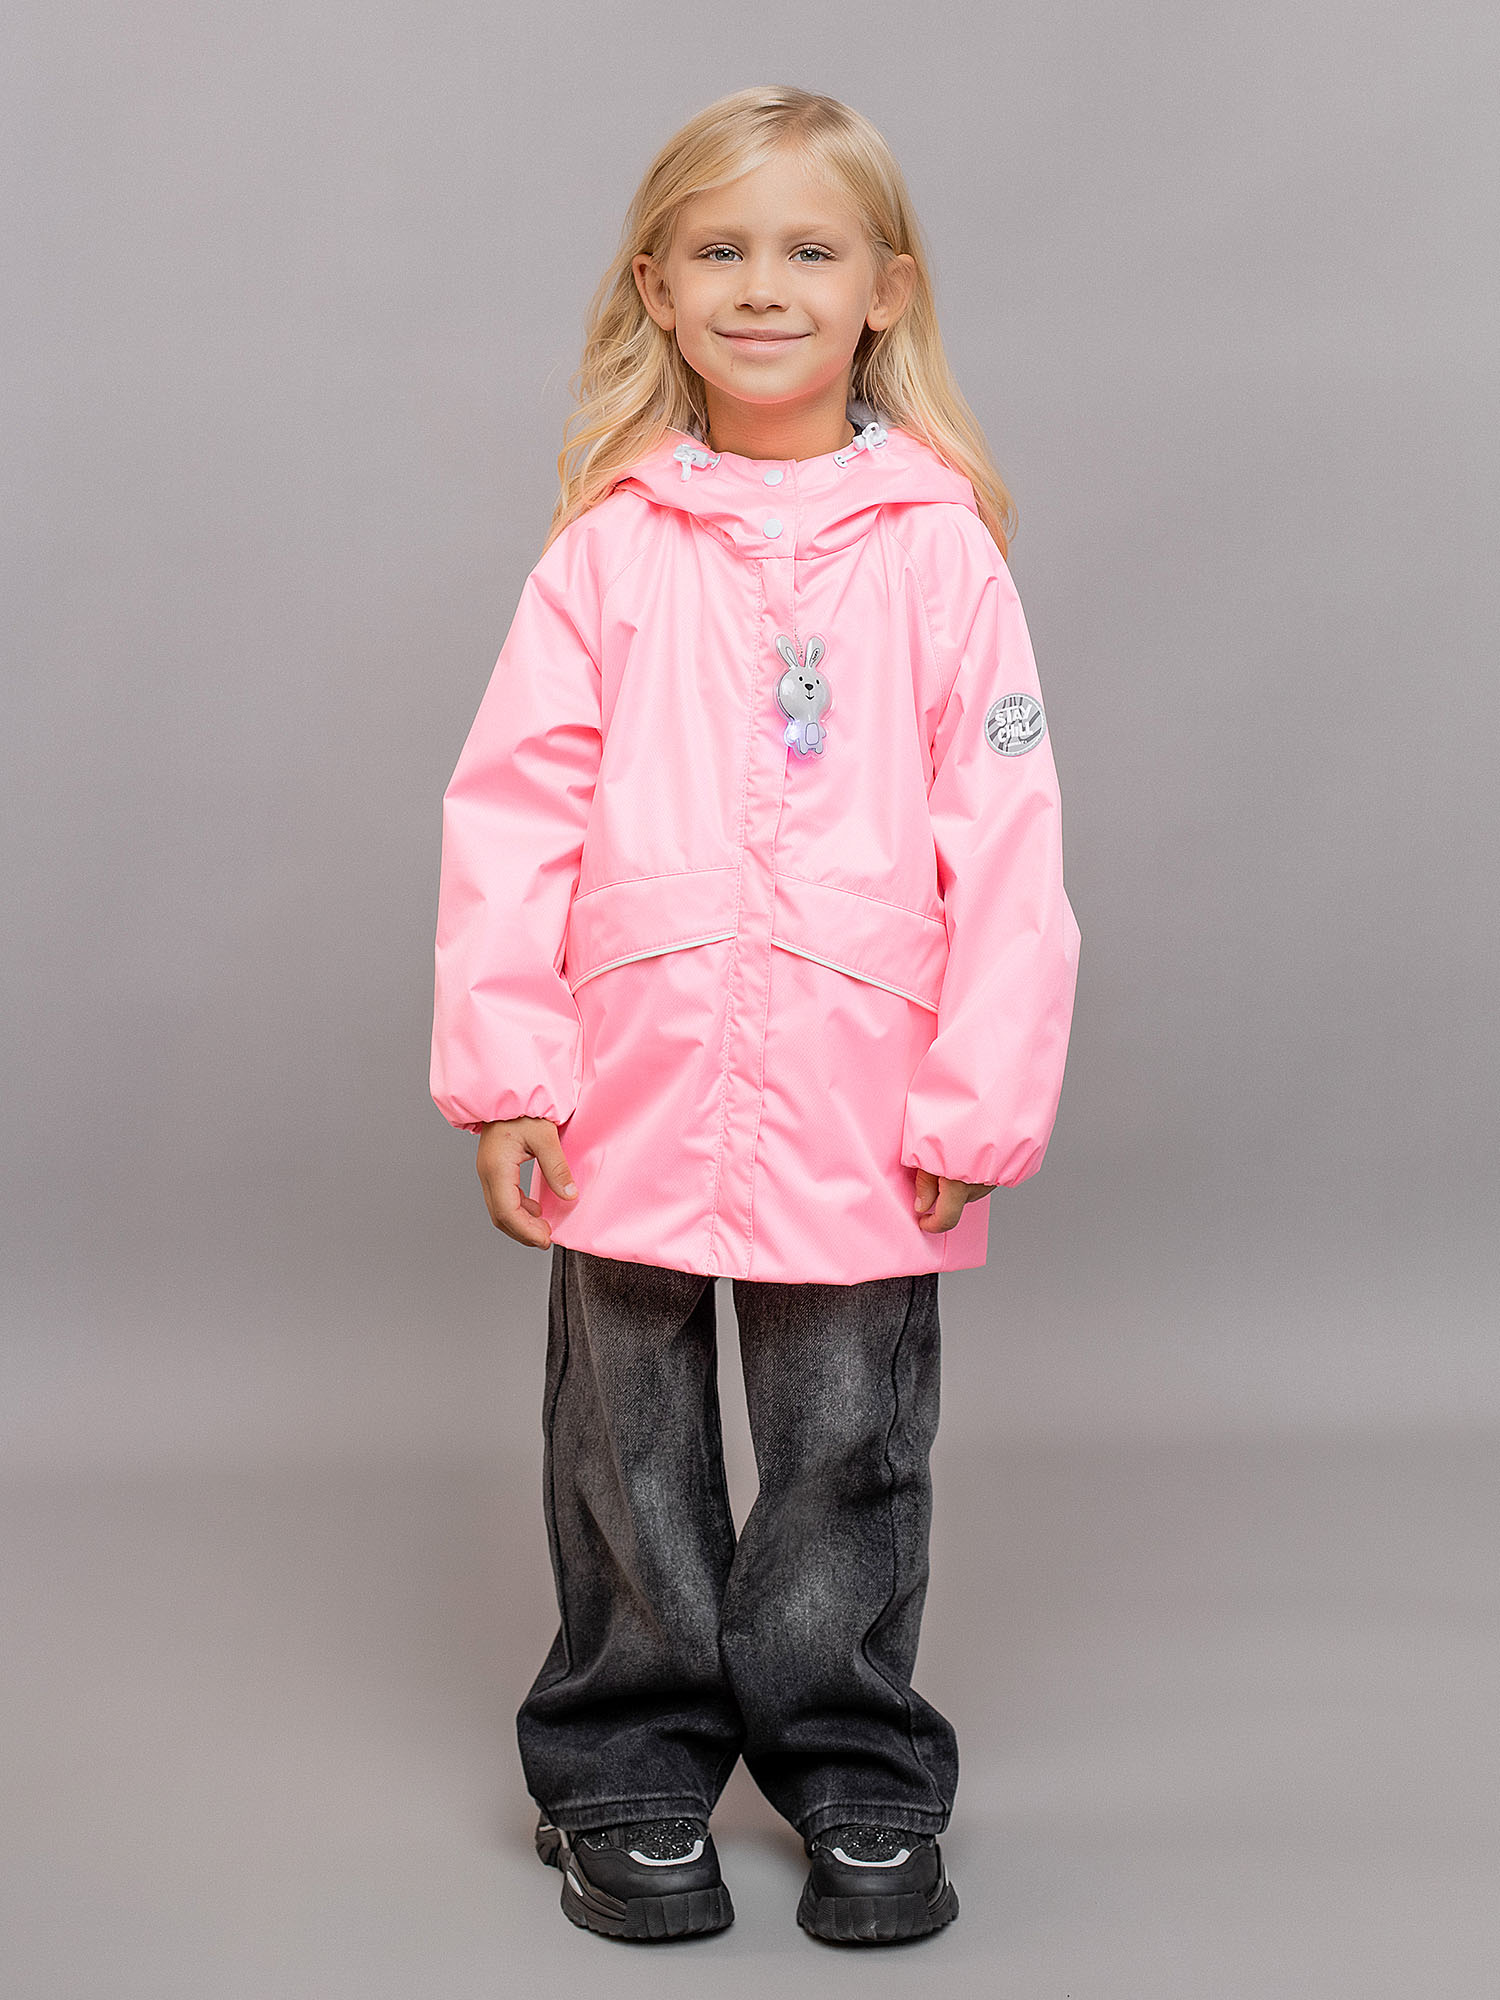 Куртка детская Batik Райя, нежно-розовый, 116